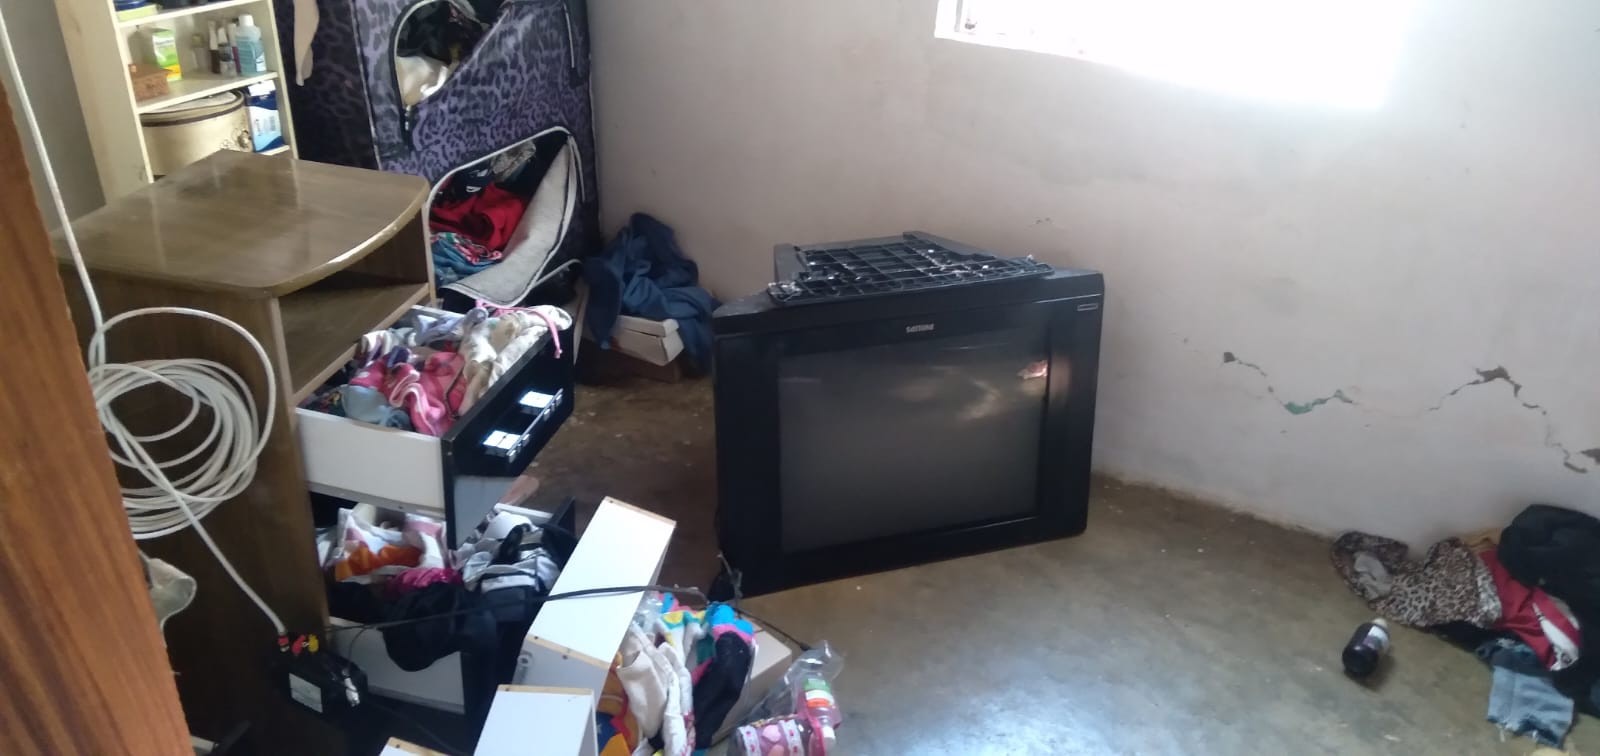 Criança de 4 anos morre após TV de tubo cair em cima dela em Jacinto